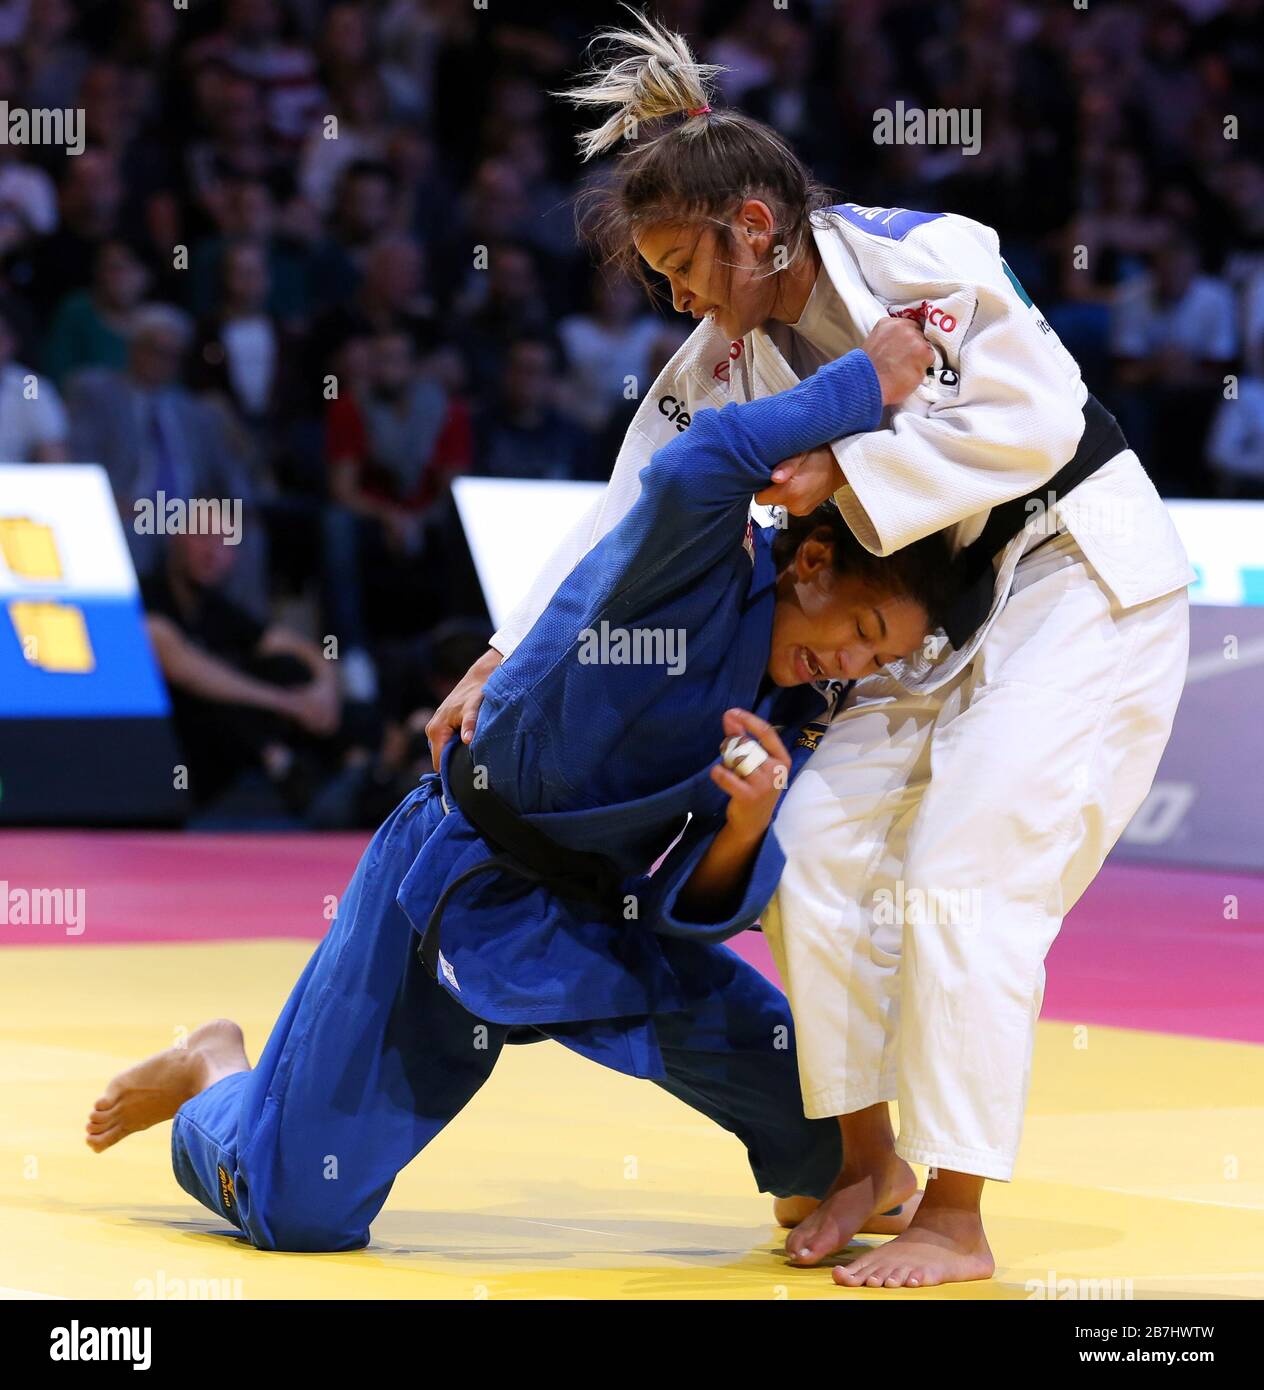 Paris, France - 08th Feb, 2020: Larissa Pimenta for Brazil against Sarah Menezes for Brazil, Women's -52kg, Bronze Medal Match (Credit: Mickael Chavet) Stock Photo